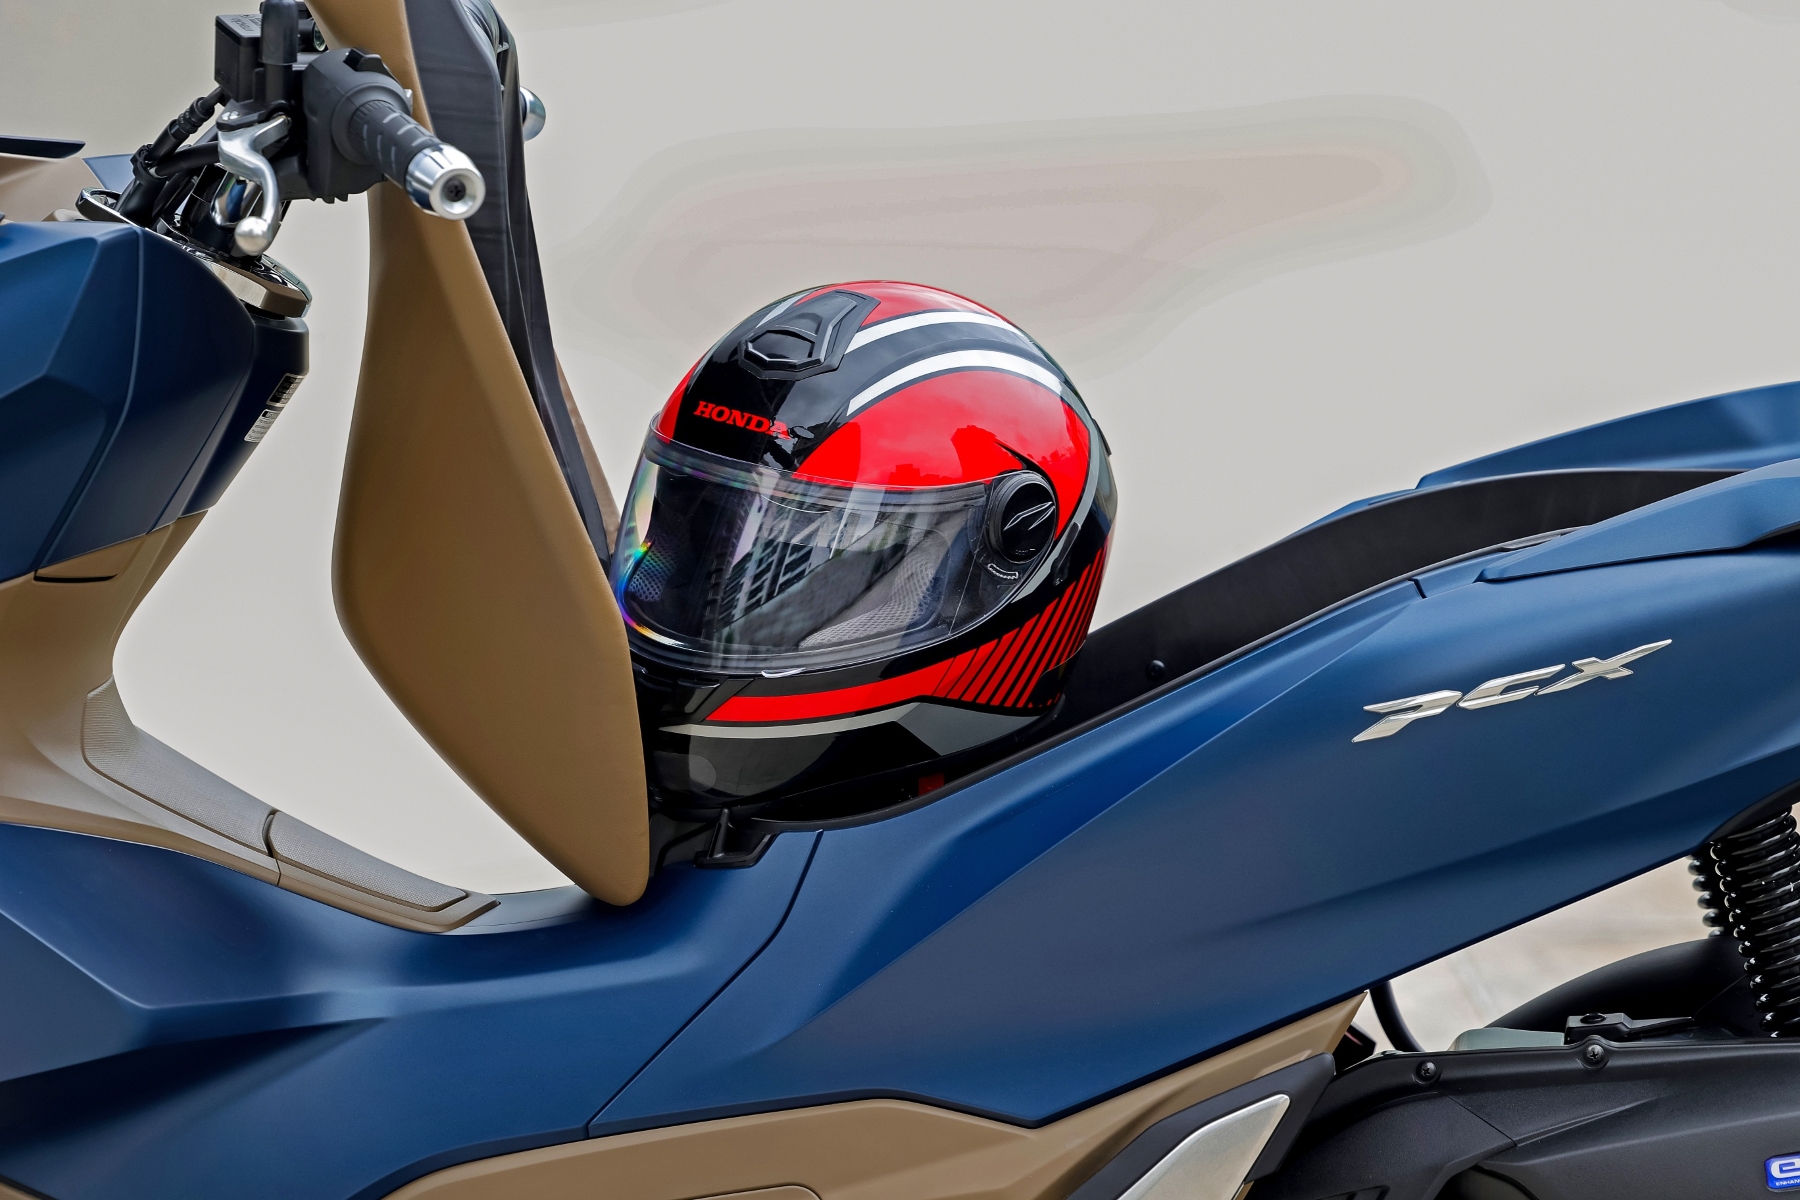 honda scooter pcx 160 modelo 2023 compartimento para guardar capacete debaixo do banco estatica